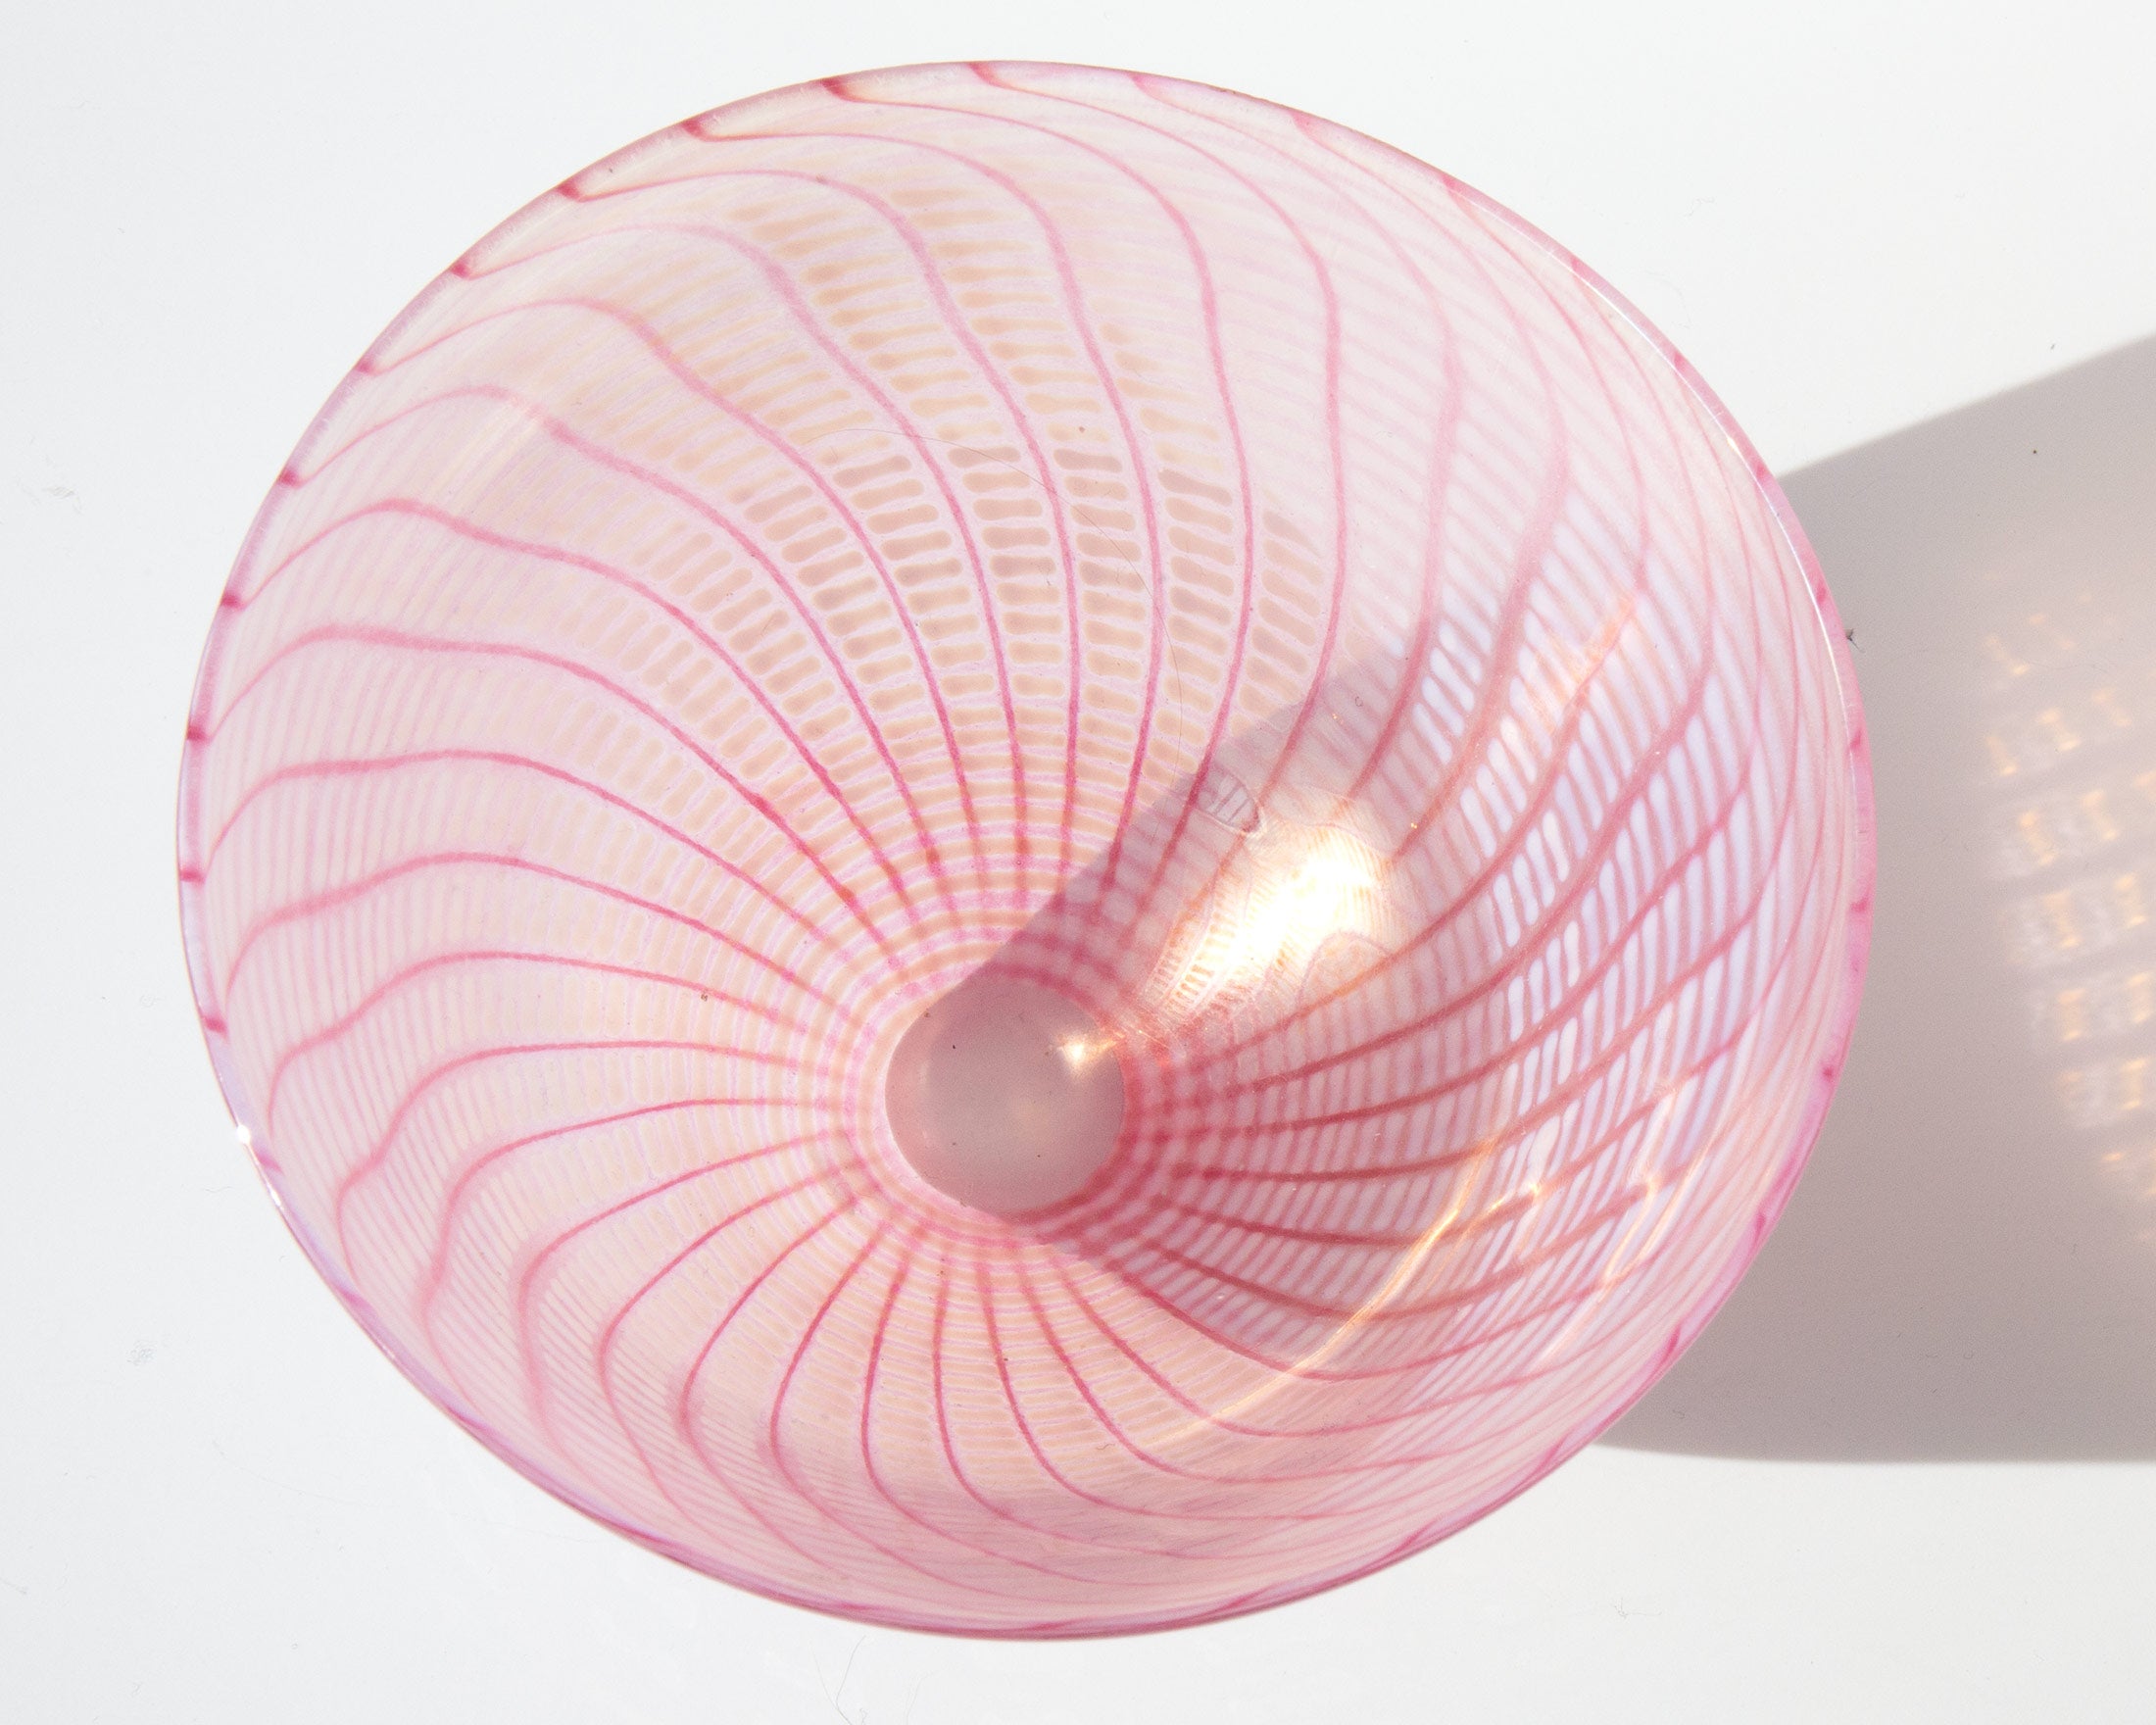 Handmade Swirl Glass Bowl